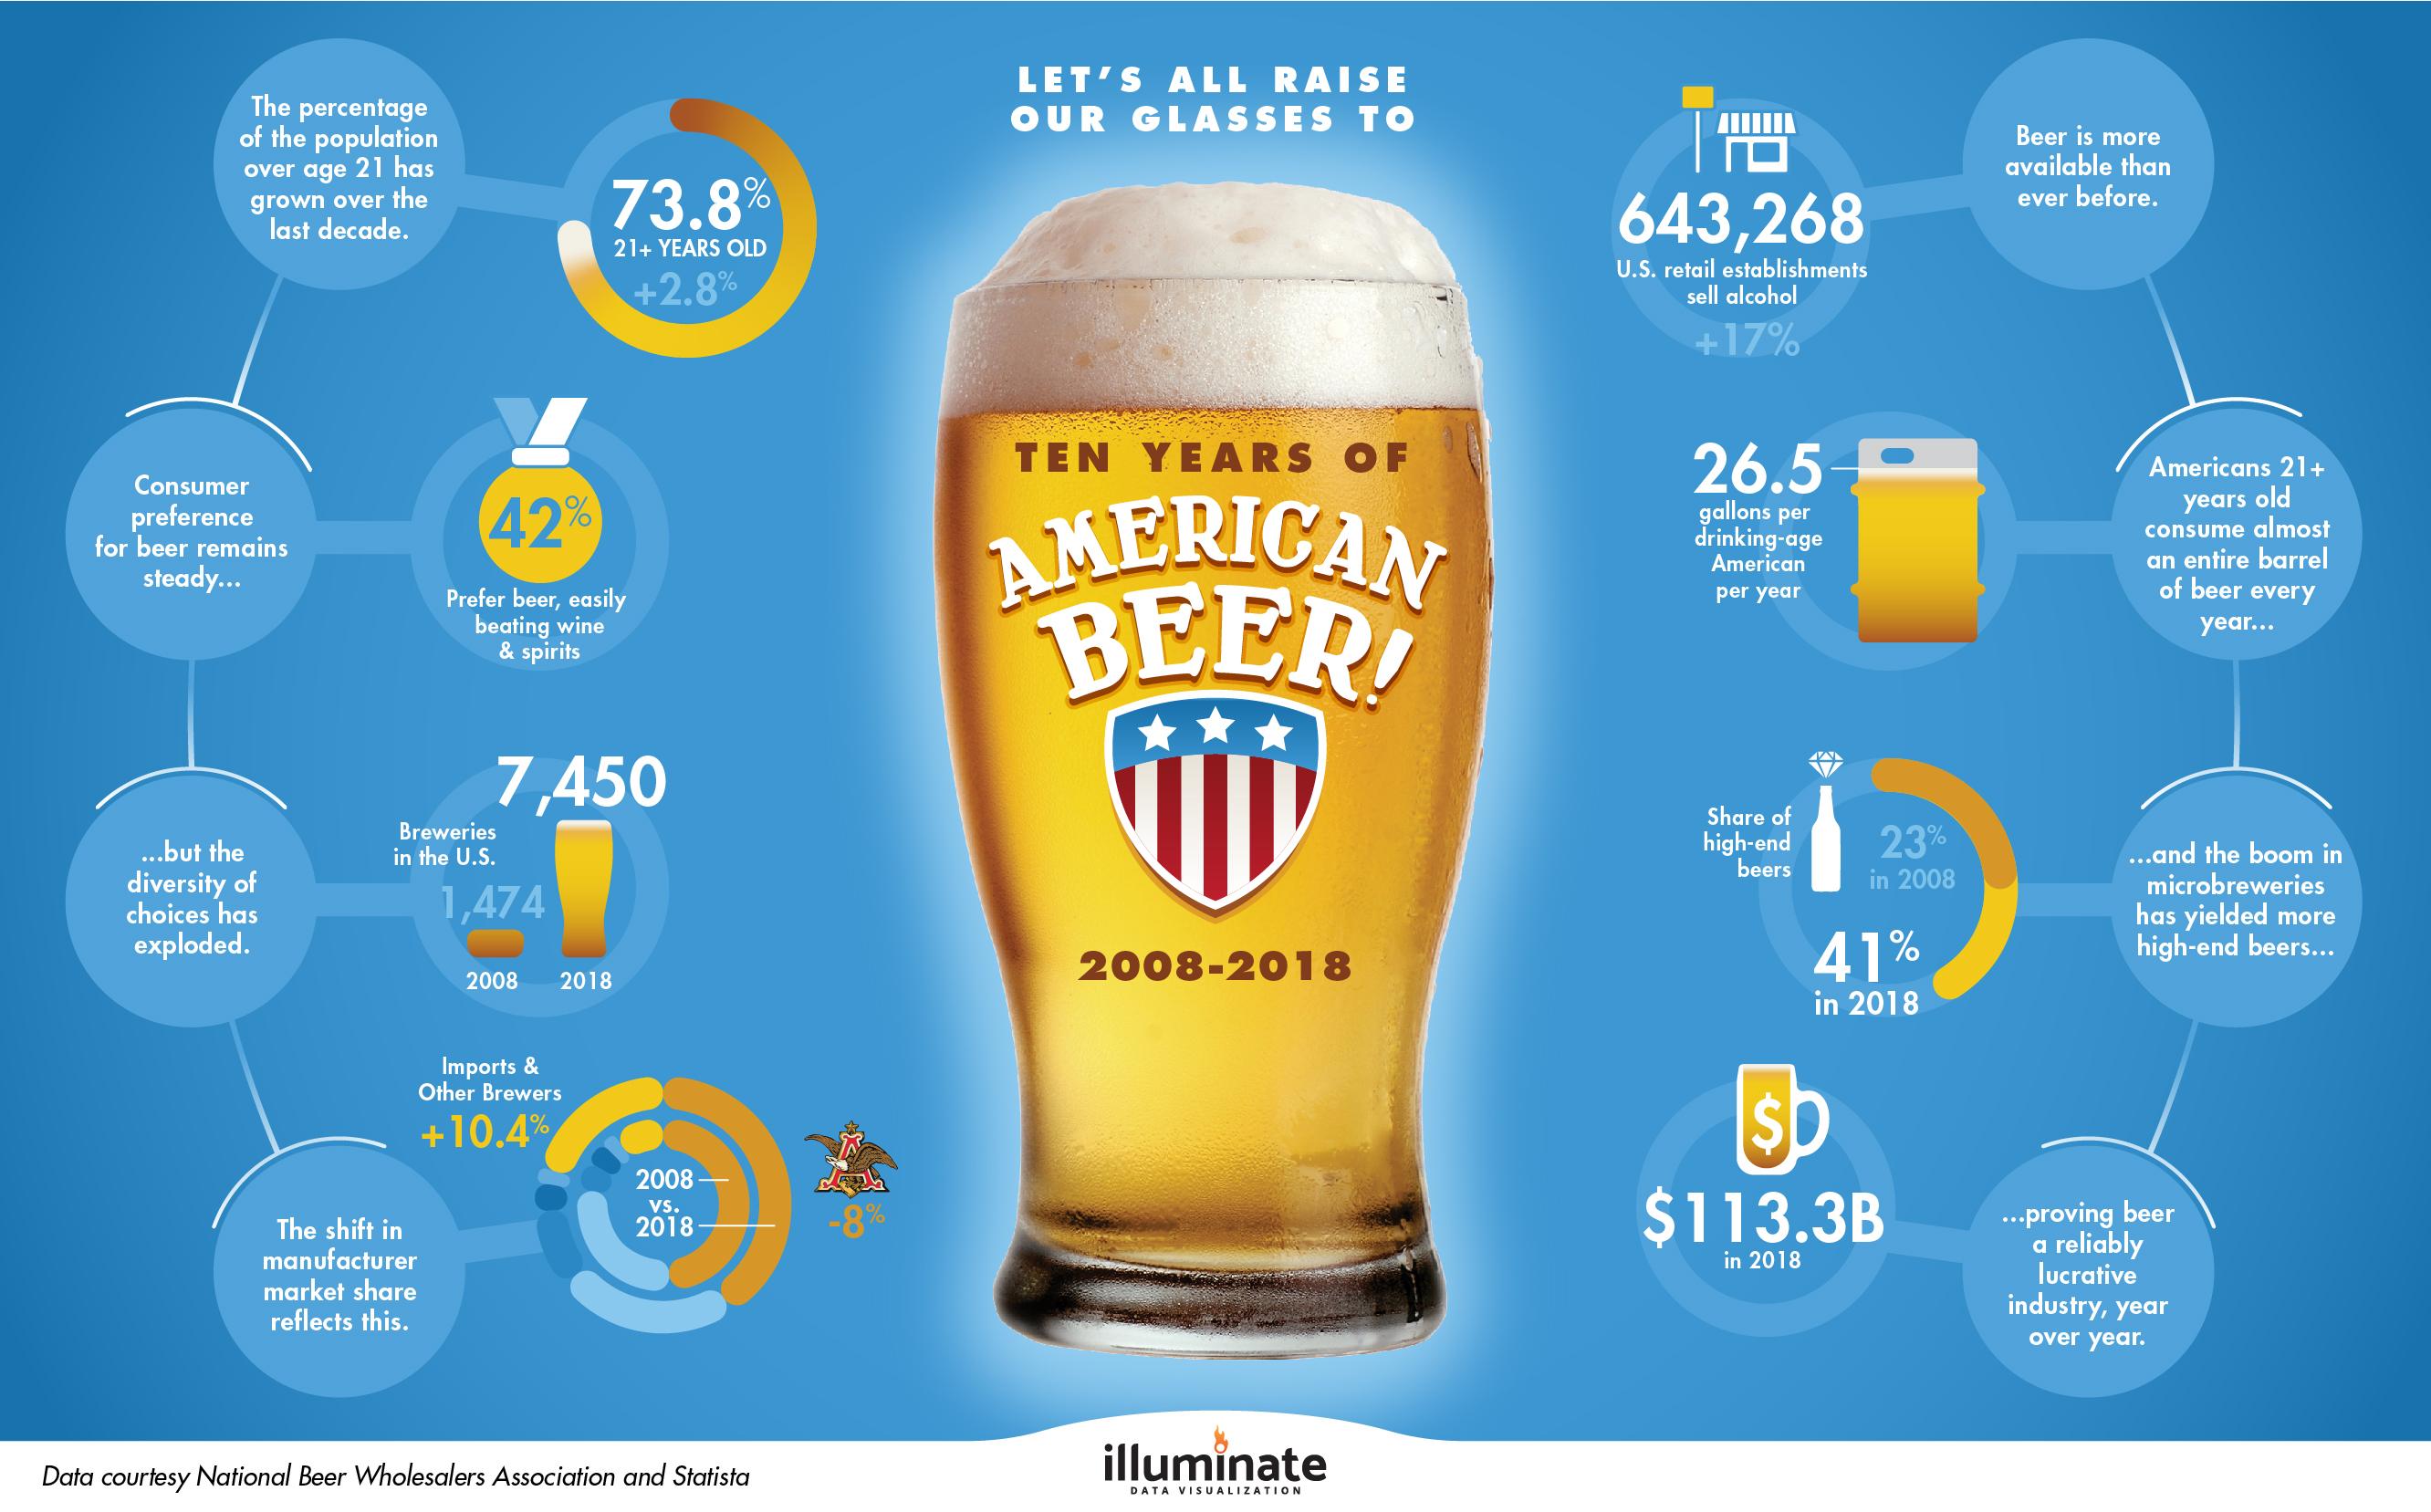 Ten Years of American Beer